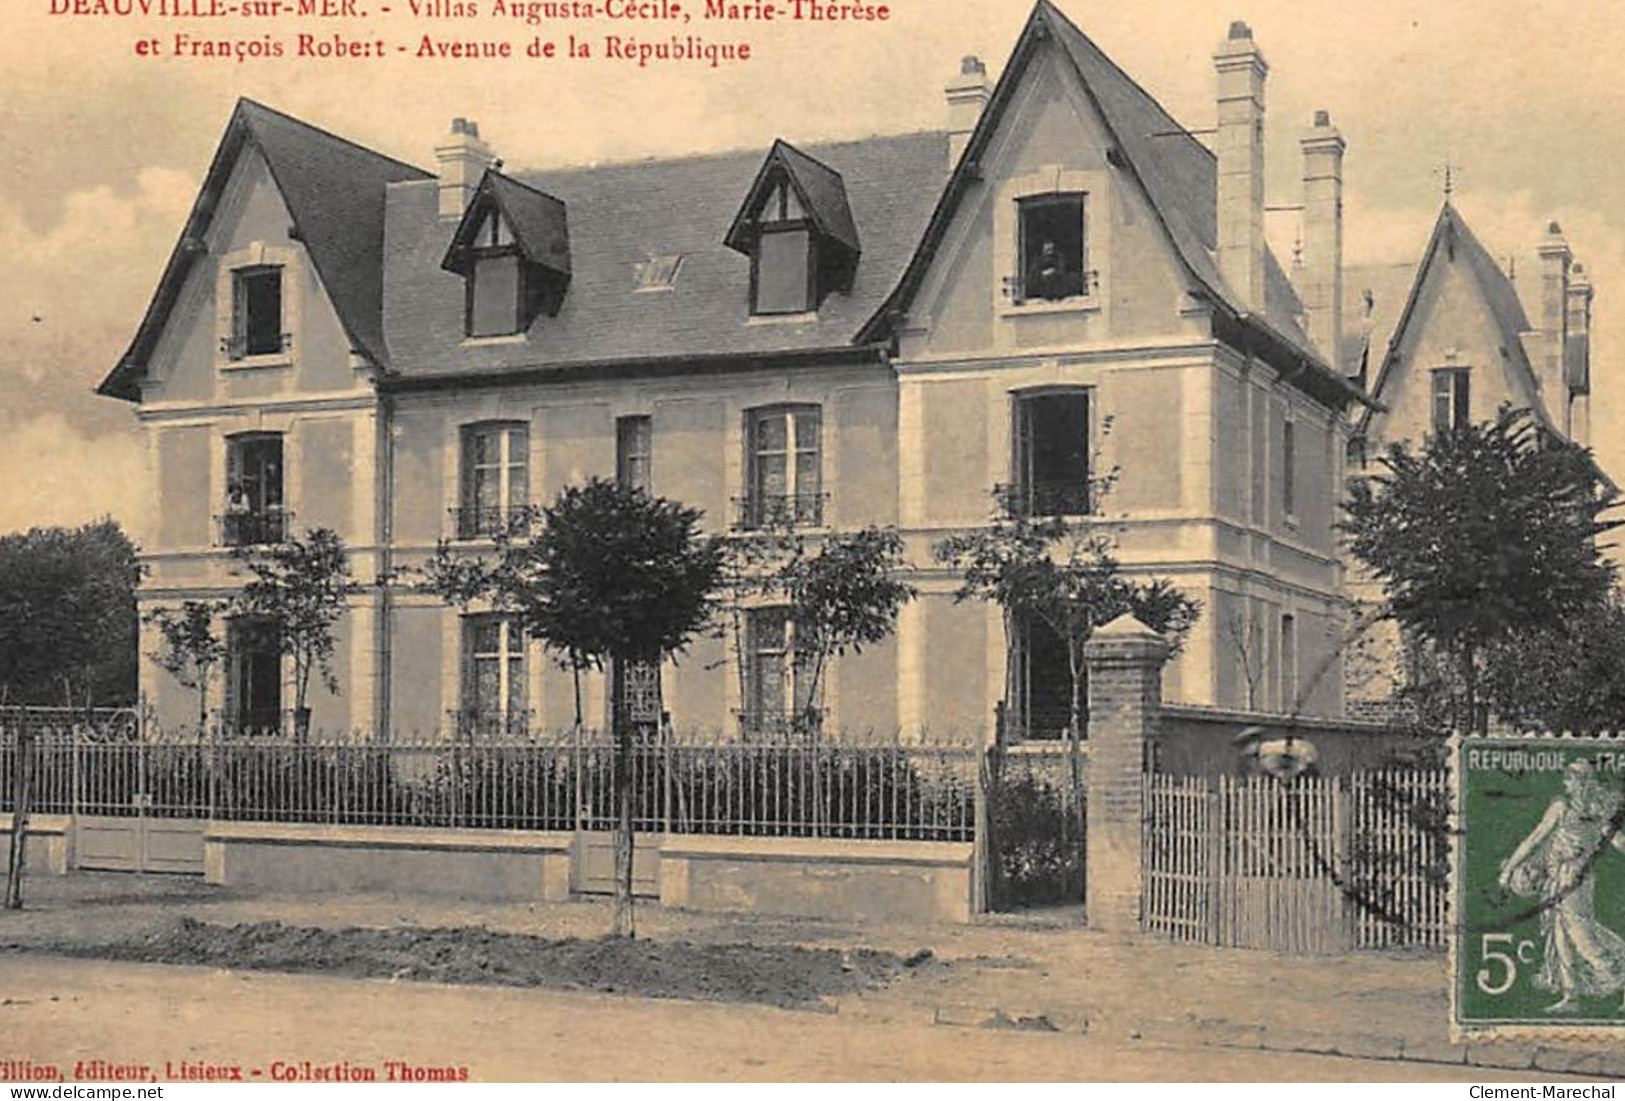 DEAUVILLE-sur-MER : Villas Augustas-cécile, Marie-therese Et Francois Robert Avenue De La République - Tres Bon Etat - Deauville